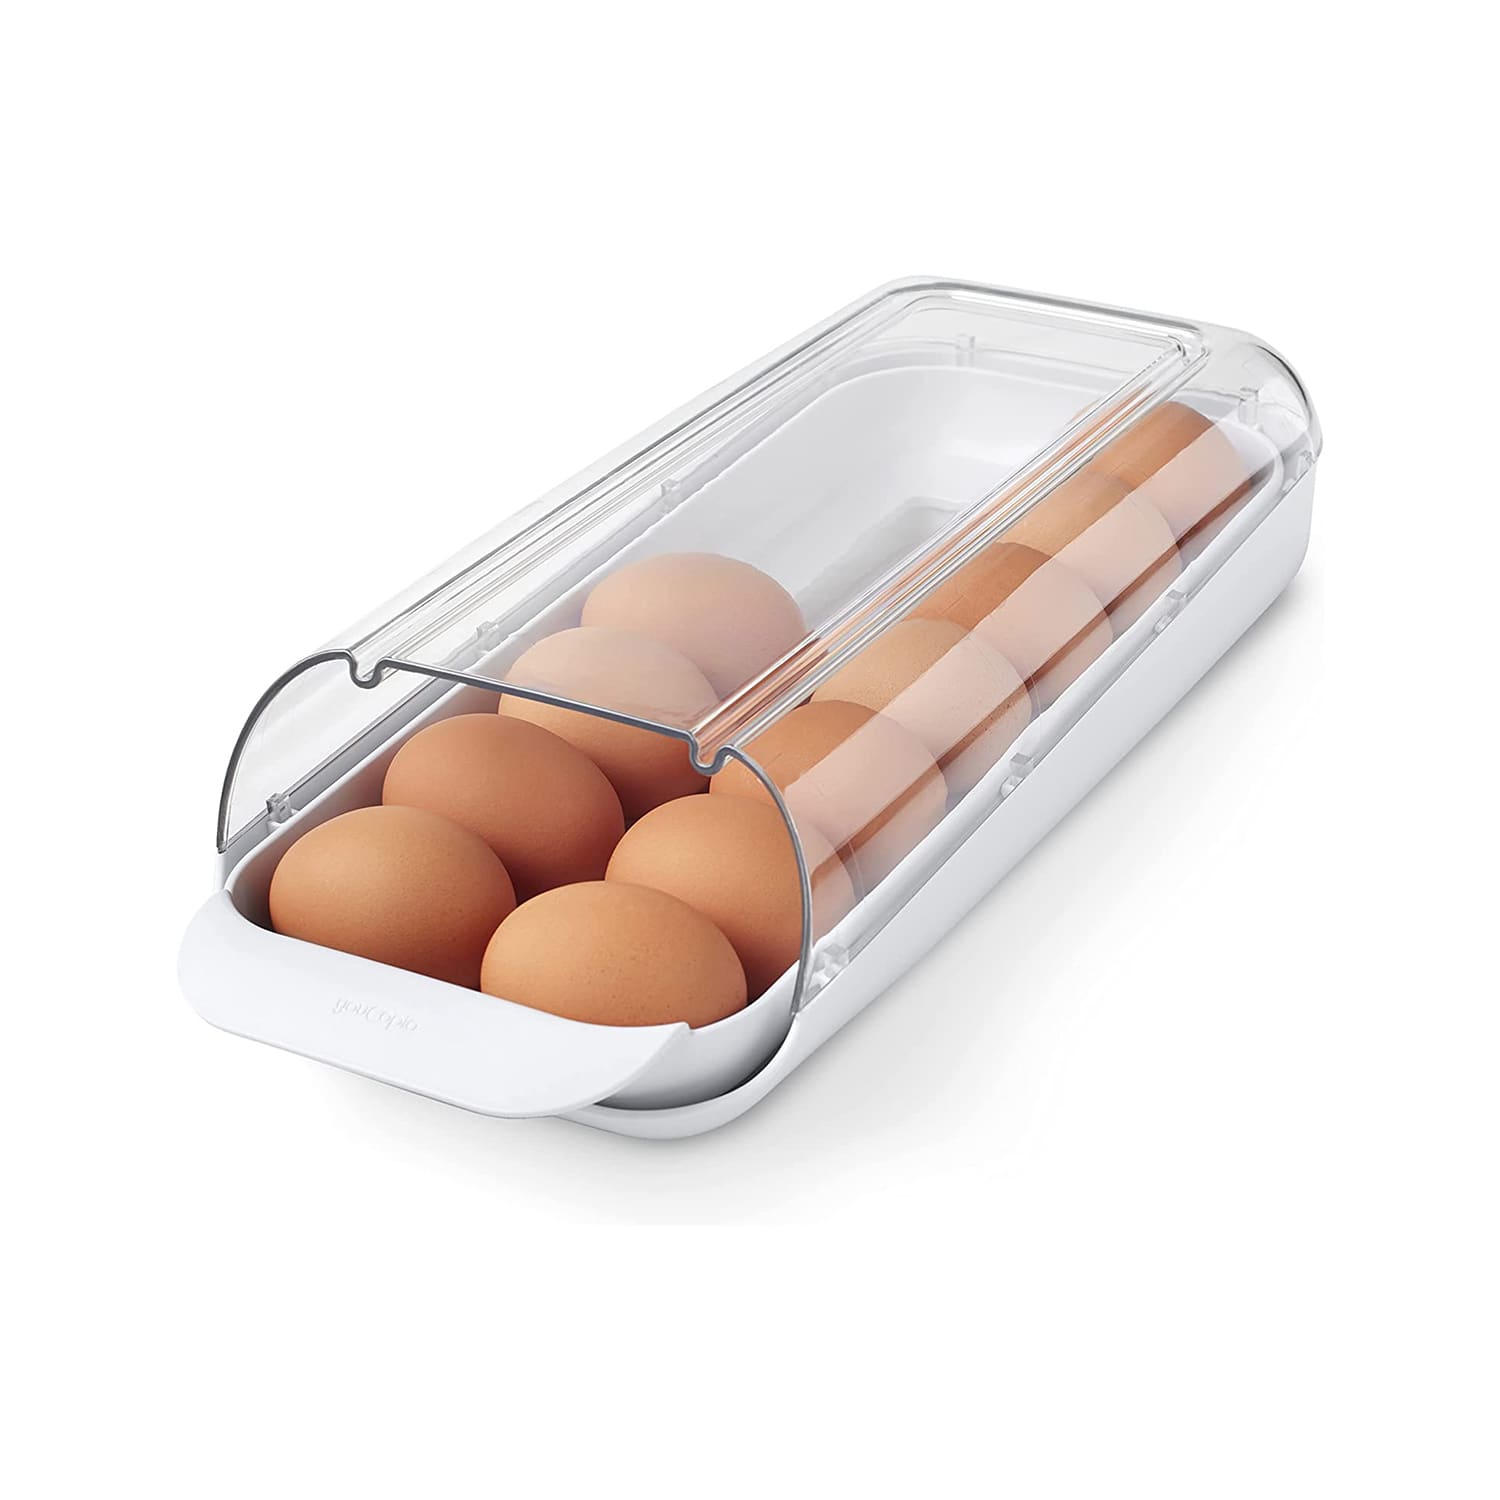 http://cdn.apartmenttherapy.info/image/upload/v1682977700/k/Edit/2023-love-letter-youcopia-fridgeview-egg-holder/youcopia-fridgeview-egg-holder.jpg